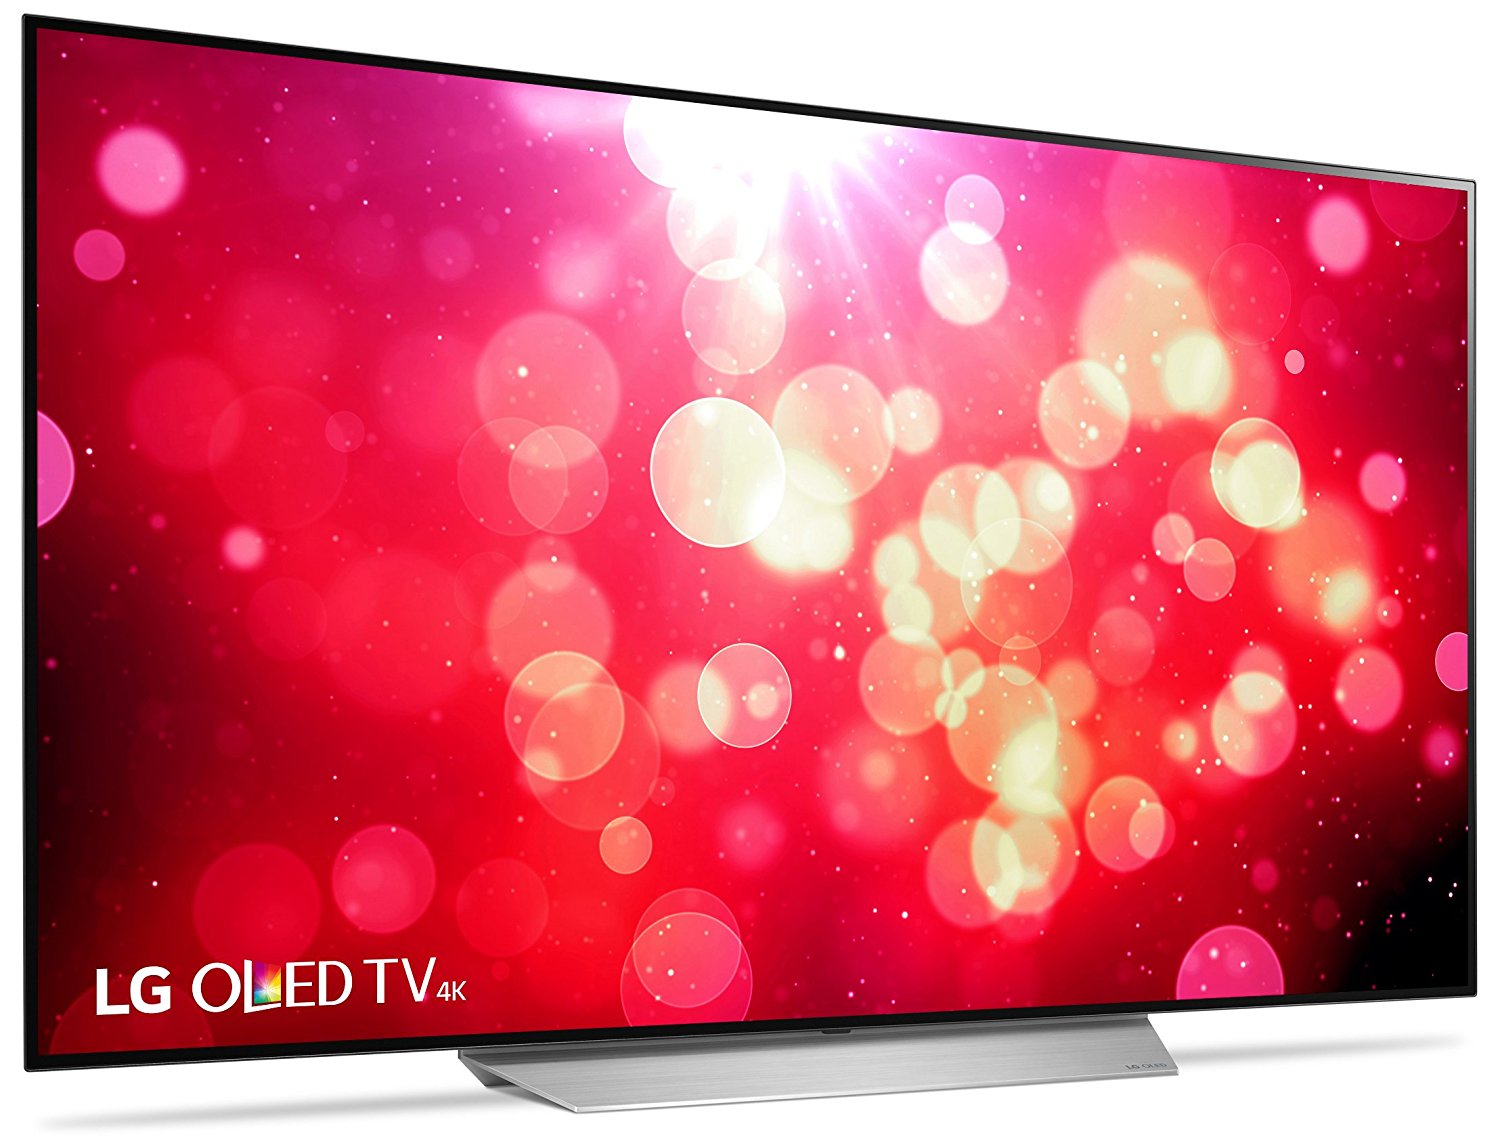 LG 55-Inch 4k UHD Smart OLED TV